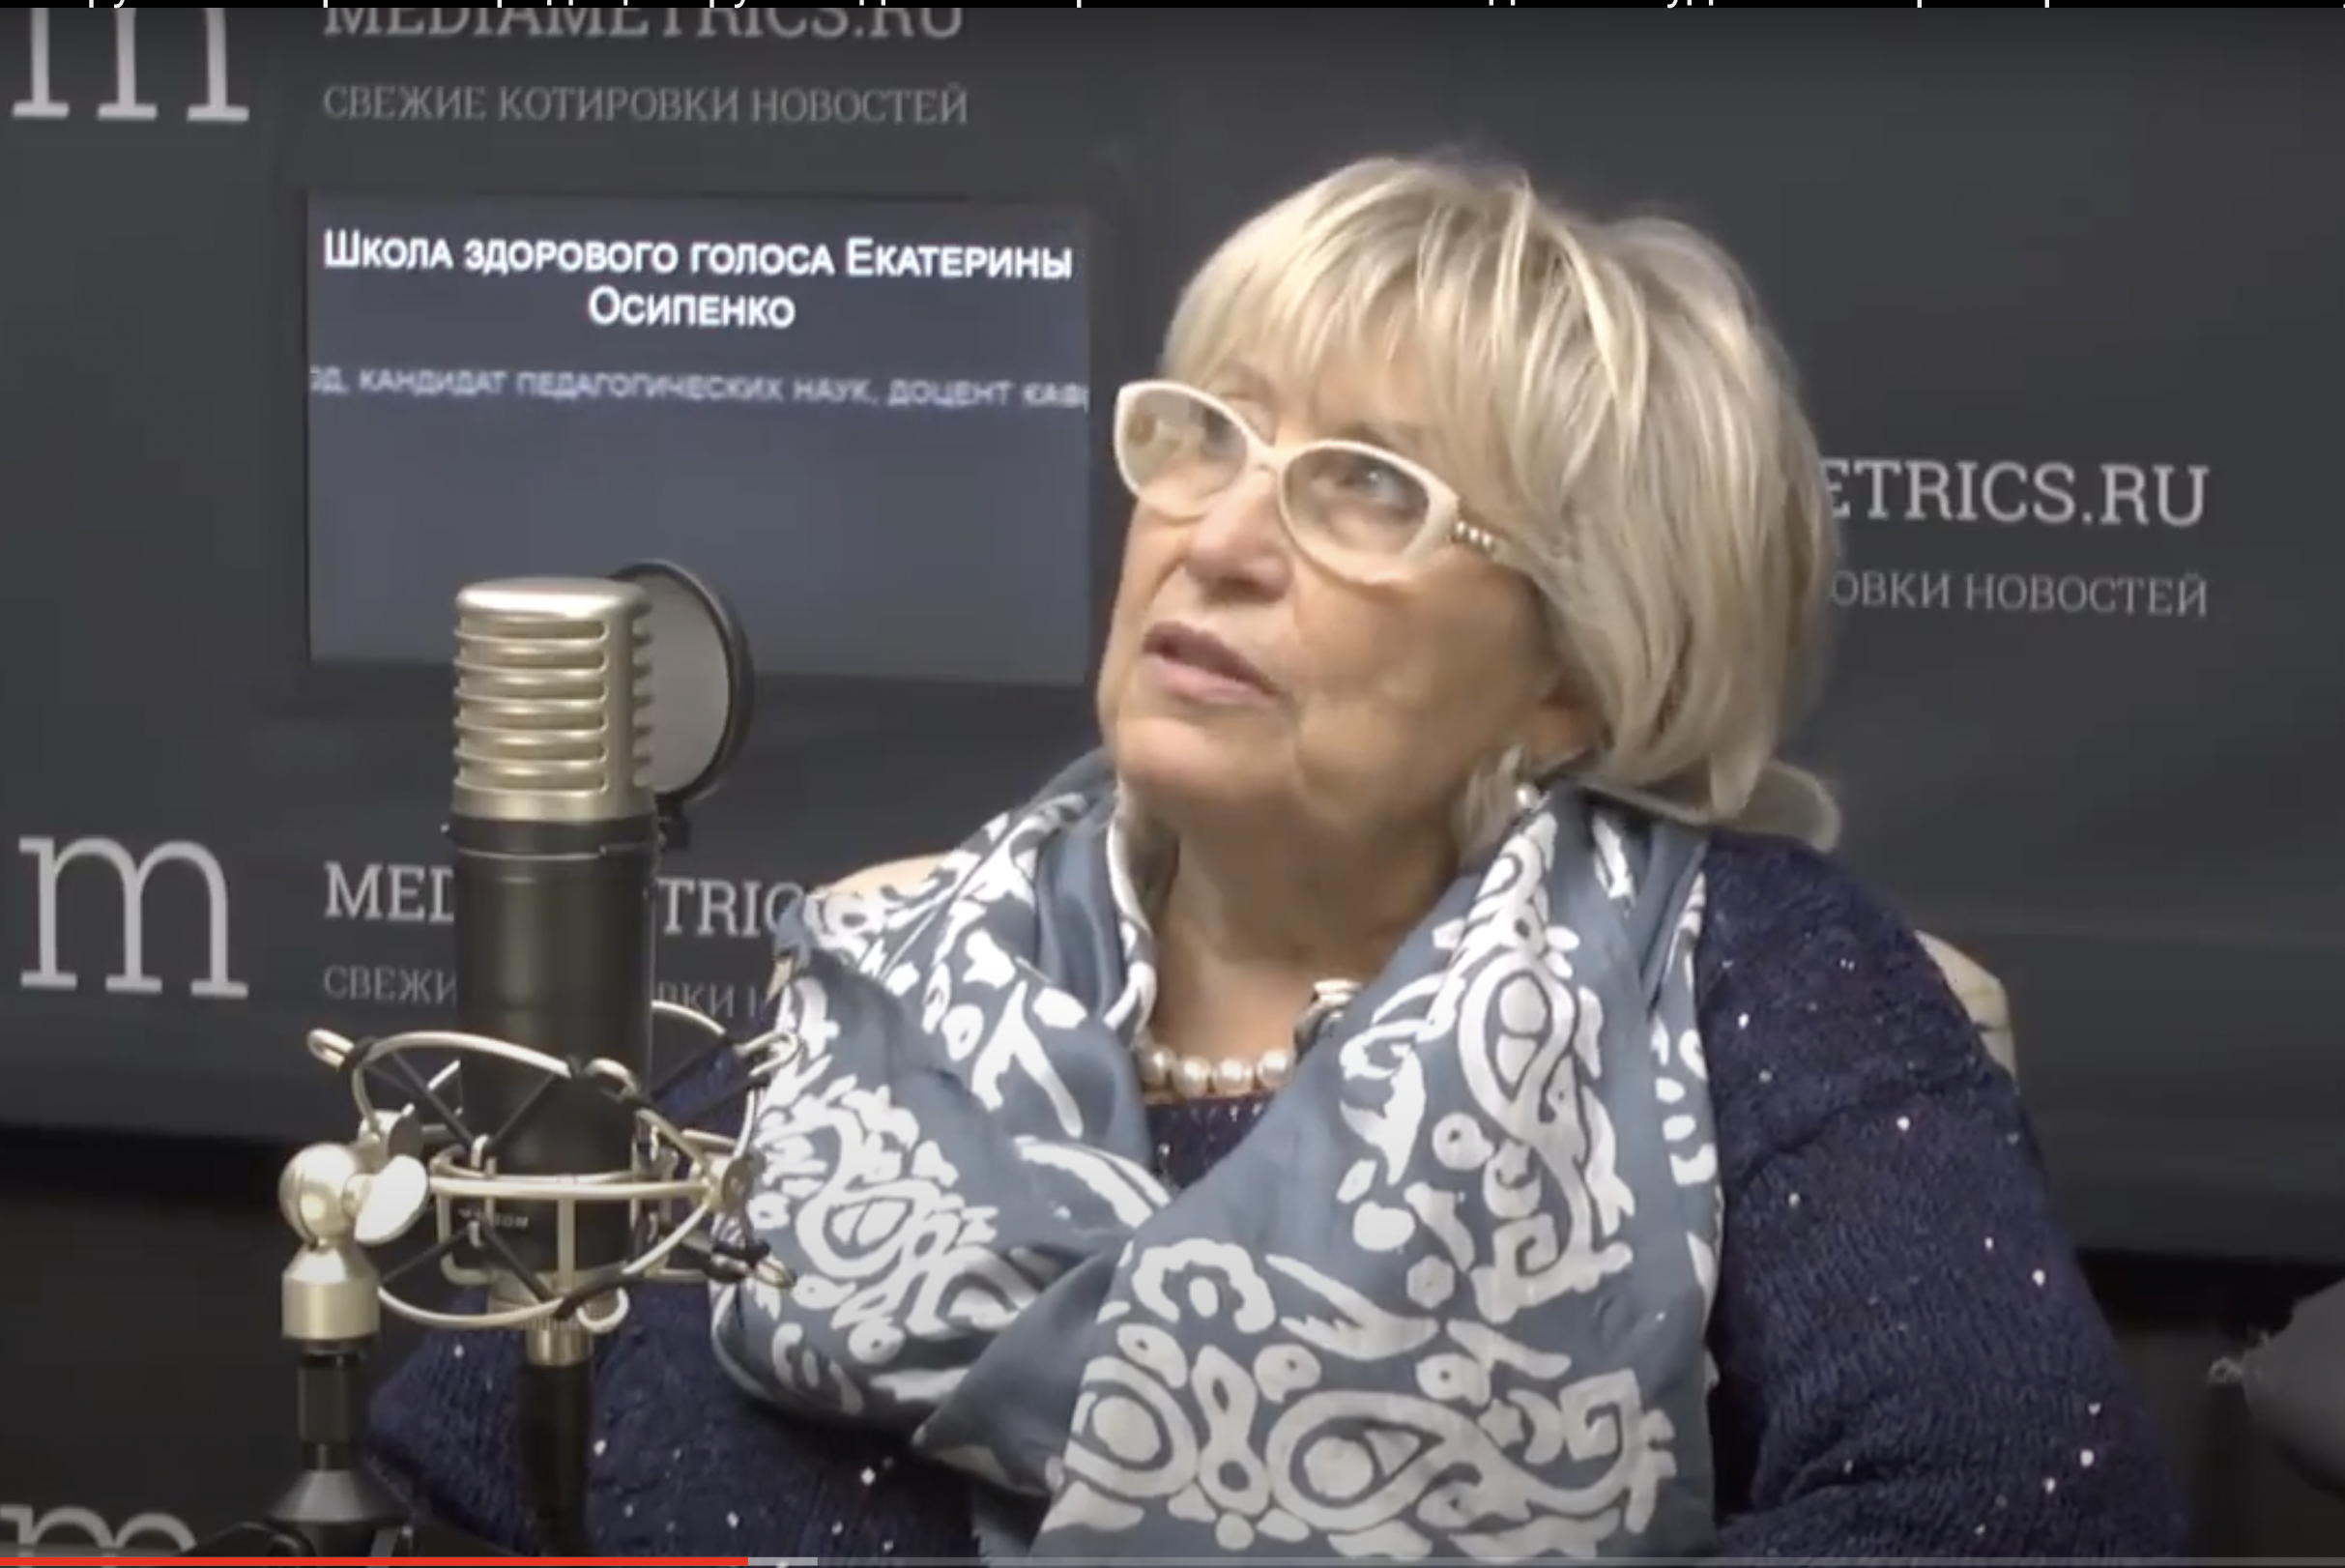 Ольга Косибород: «Хор — это лучшее в исполнительском искусстве»